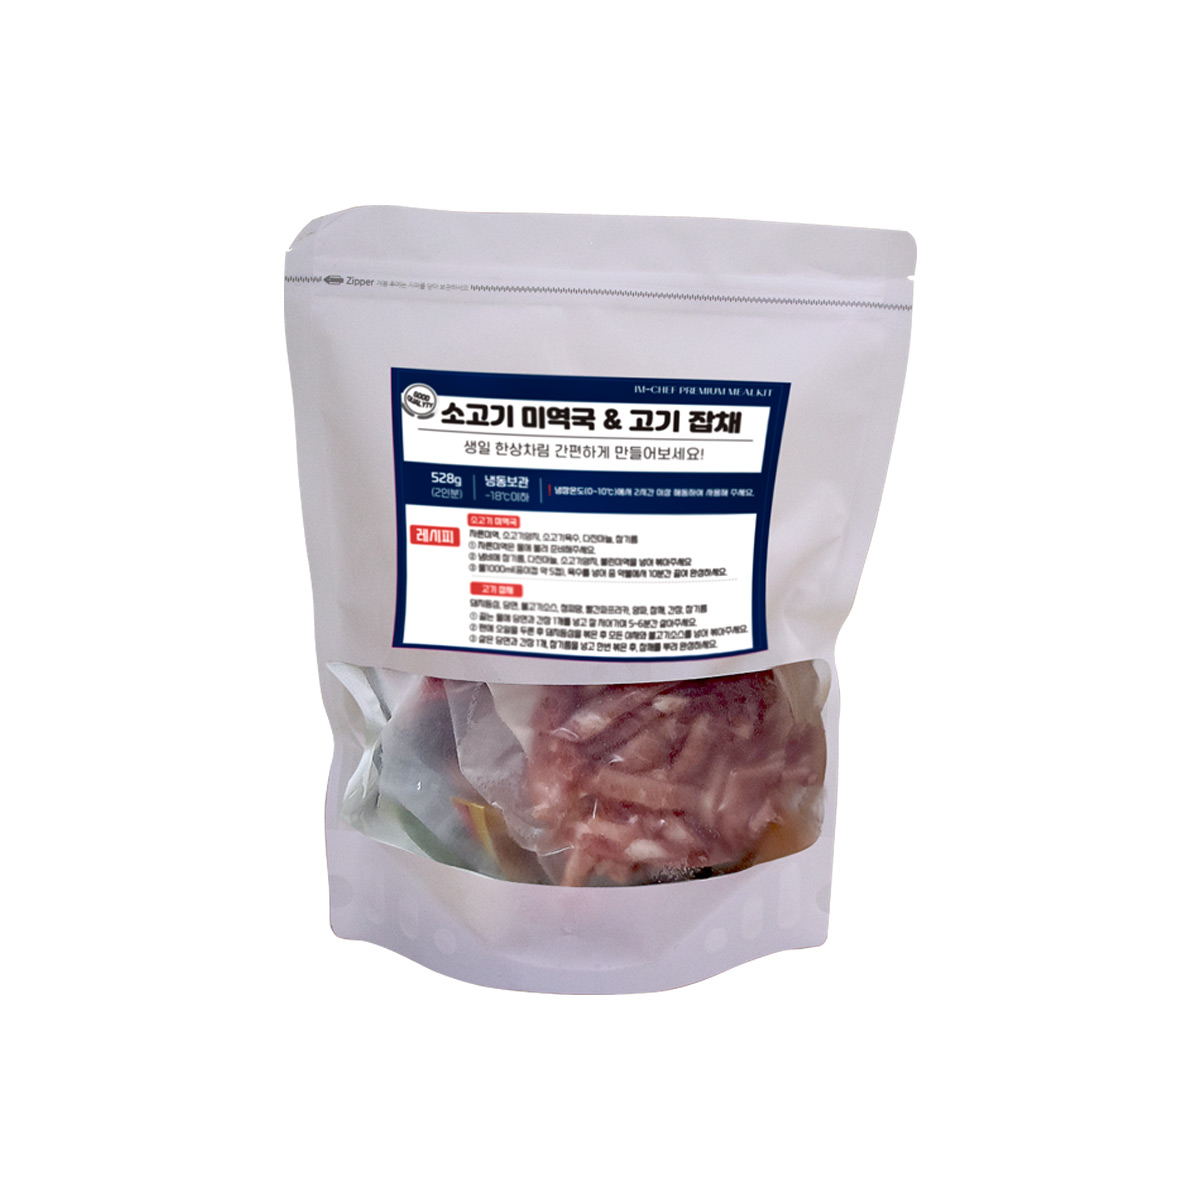 소고기 미역국 + 고기 잡채 밀키트 (2인분)